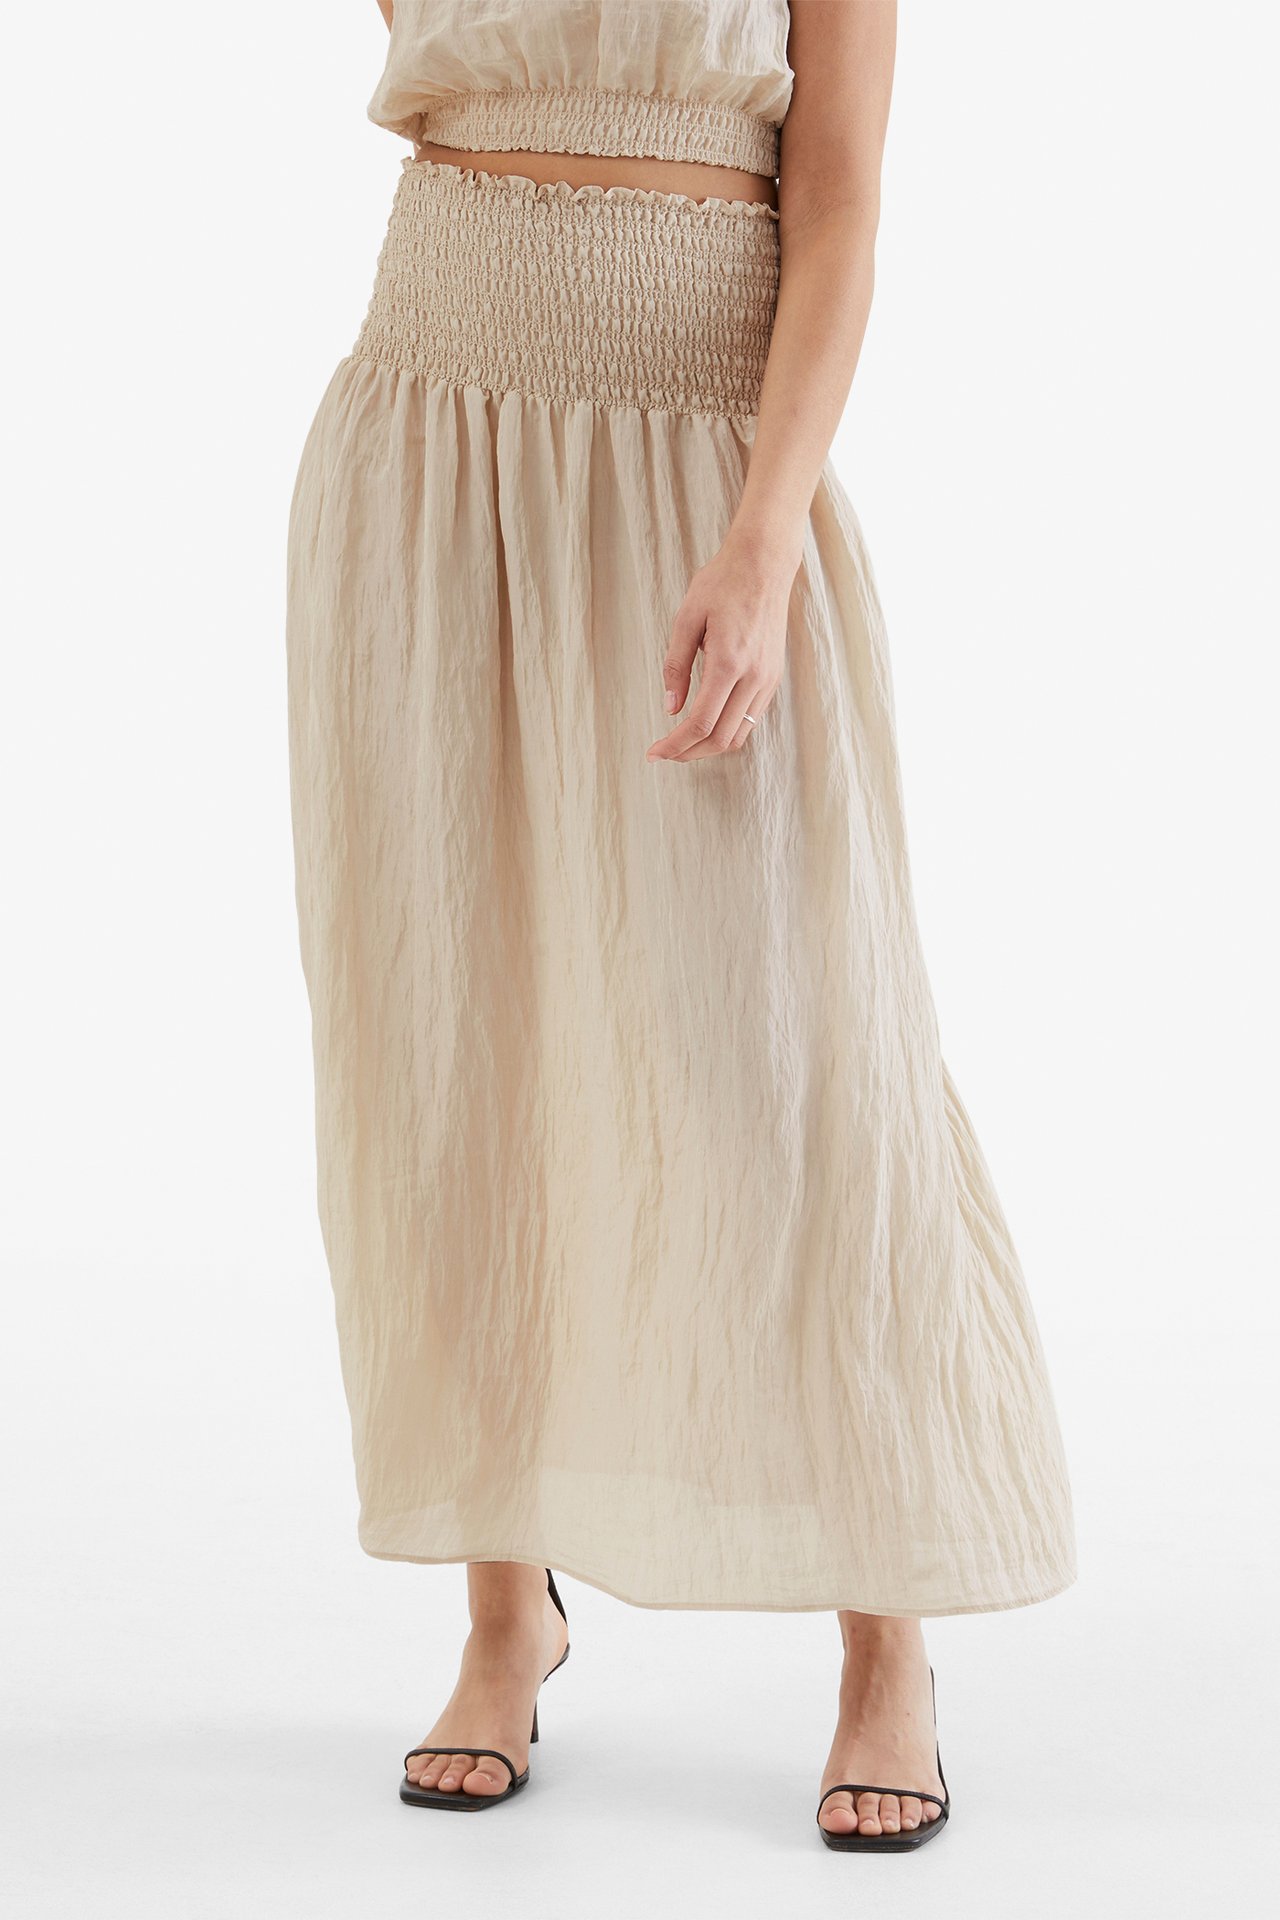 Krinklad kjol - Offwhite - 174cm / Storlek: S - 2